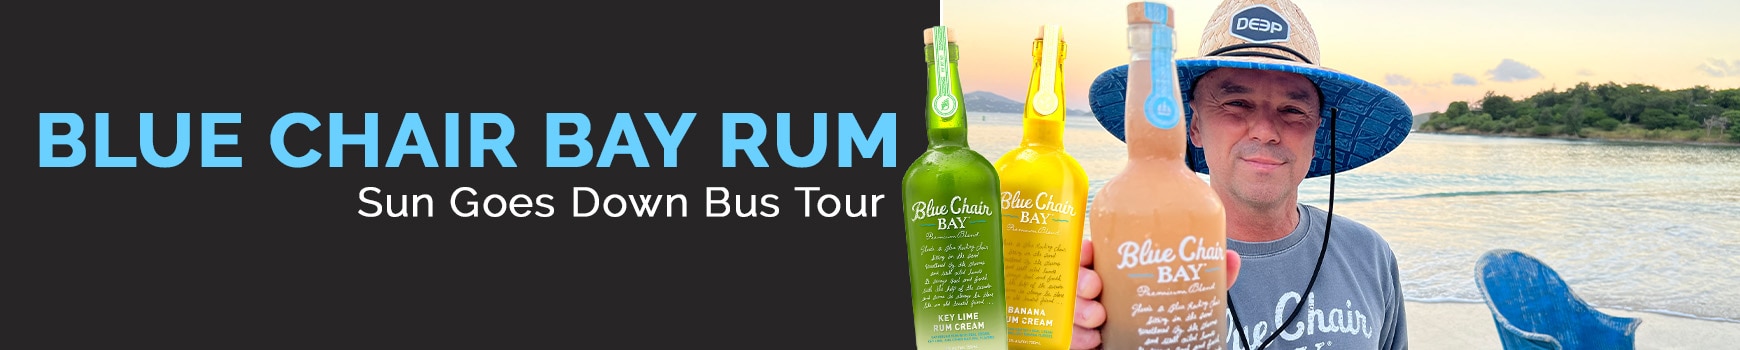 Blue Chair Bay Rum Sun Goes Down Bus Tour